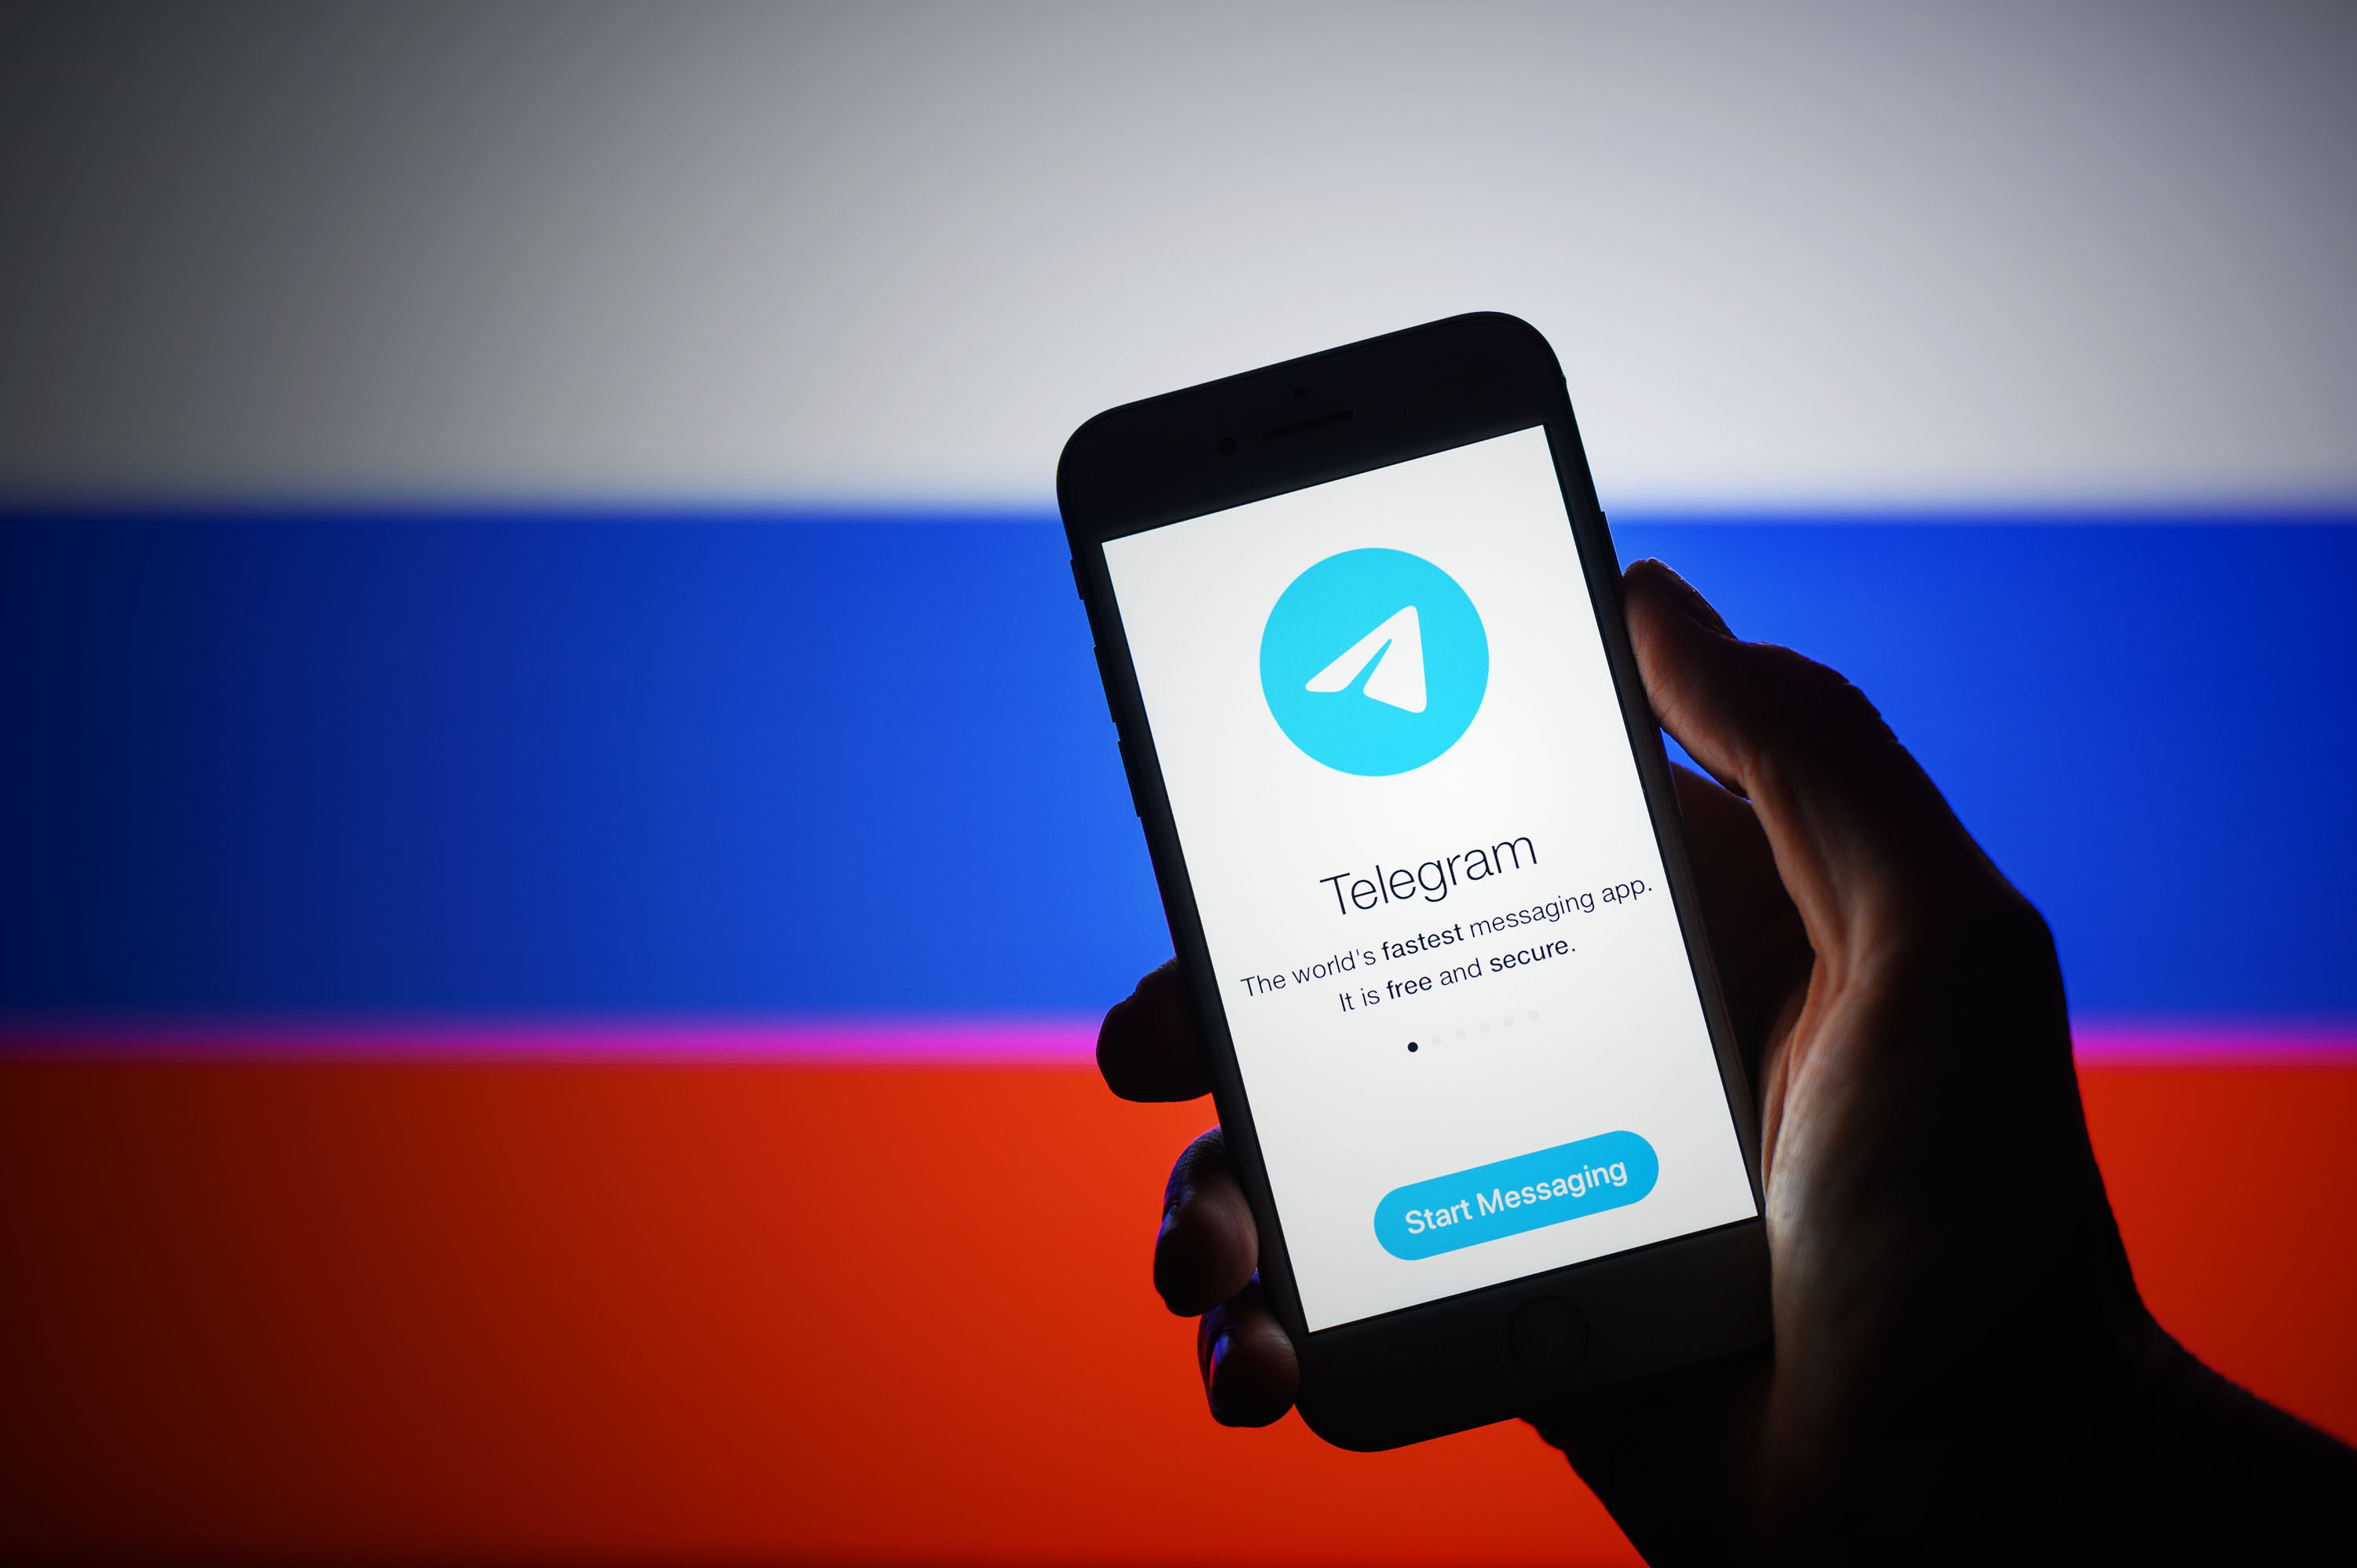 WhatsApp, Telegram, Snapchat... La Russie interdit toutes les apps (ou presque) de messagerie étrangères aux organisations gouvernementales